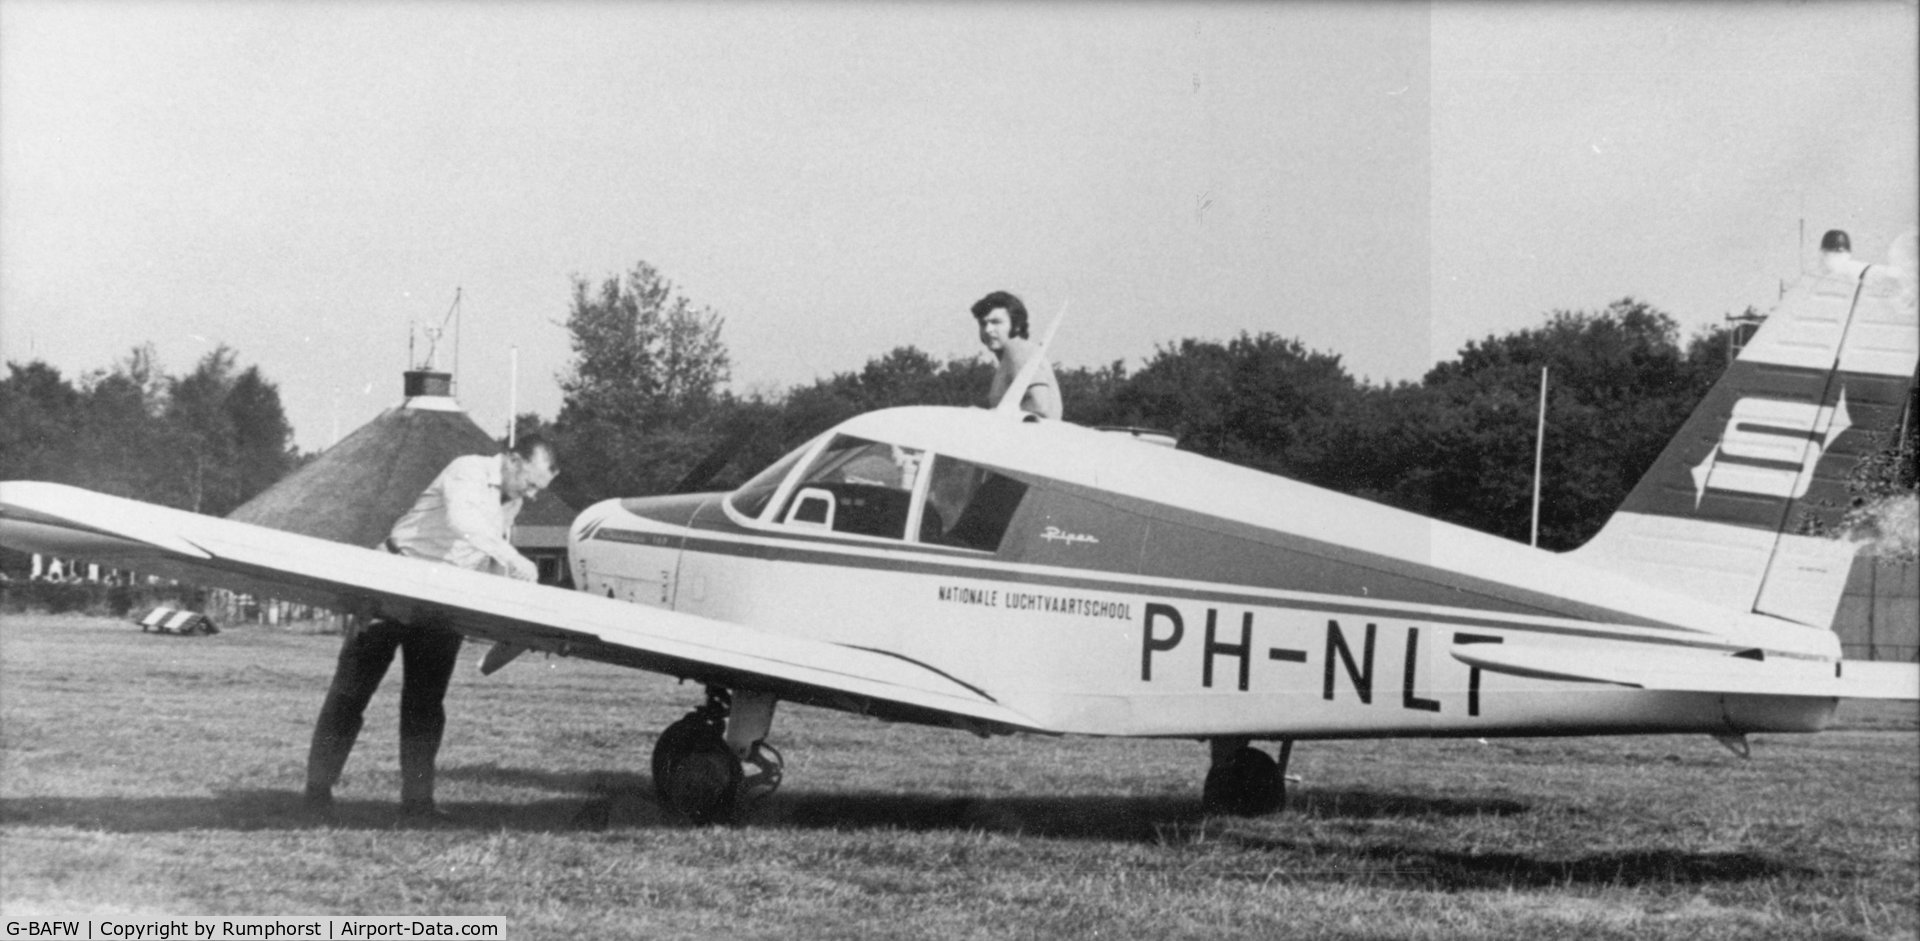 G-BAFW, 1965 Piper PA-28-140 Cherokee C/N 28-21050, G-BAFW voorheen PH-NLT op vliegveld Hilversum Nederland